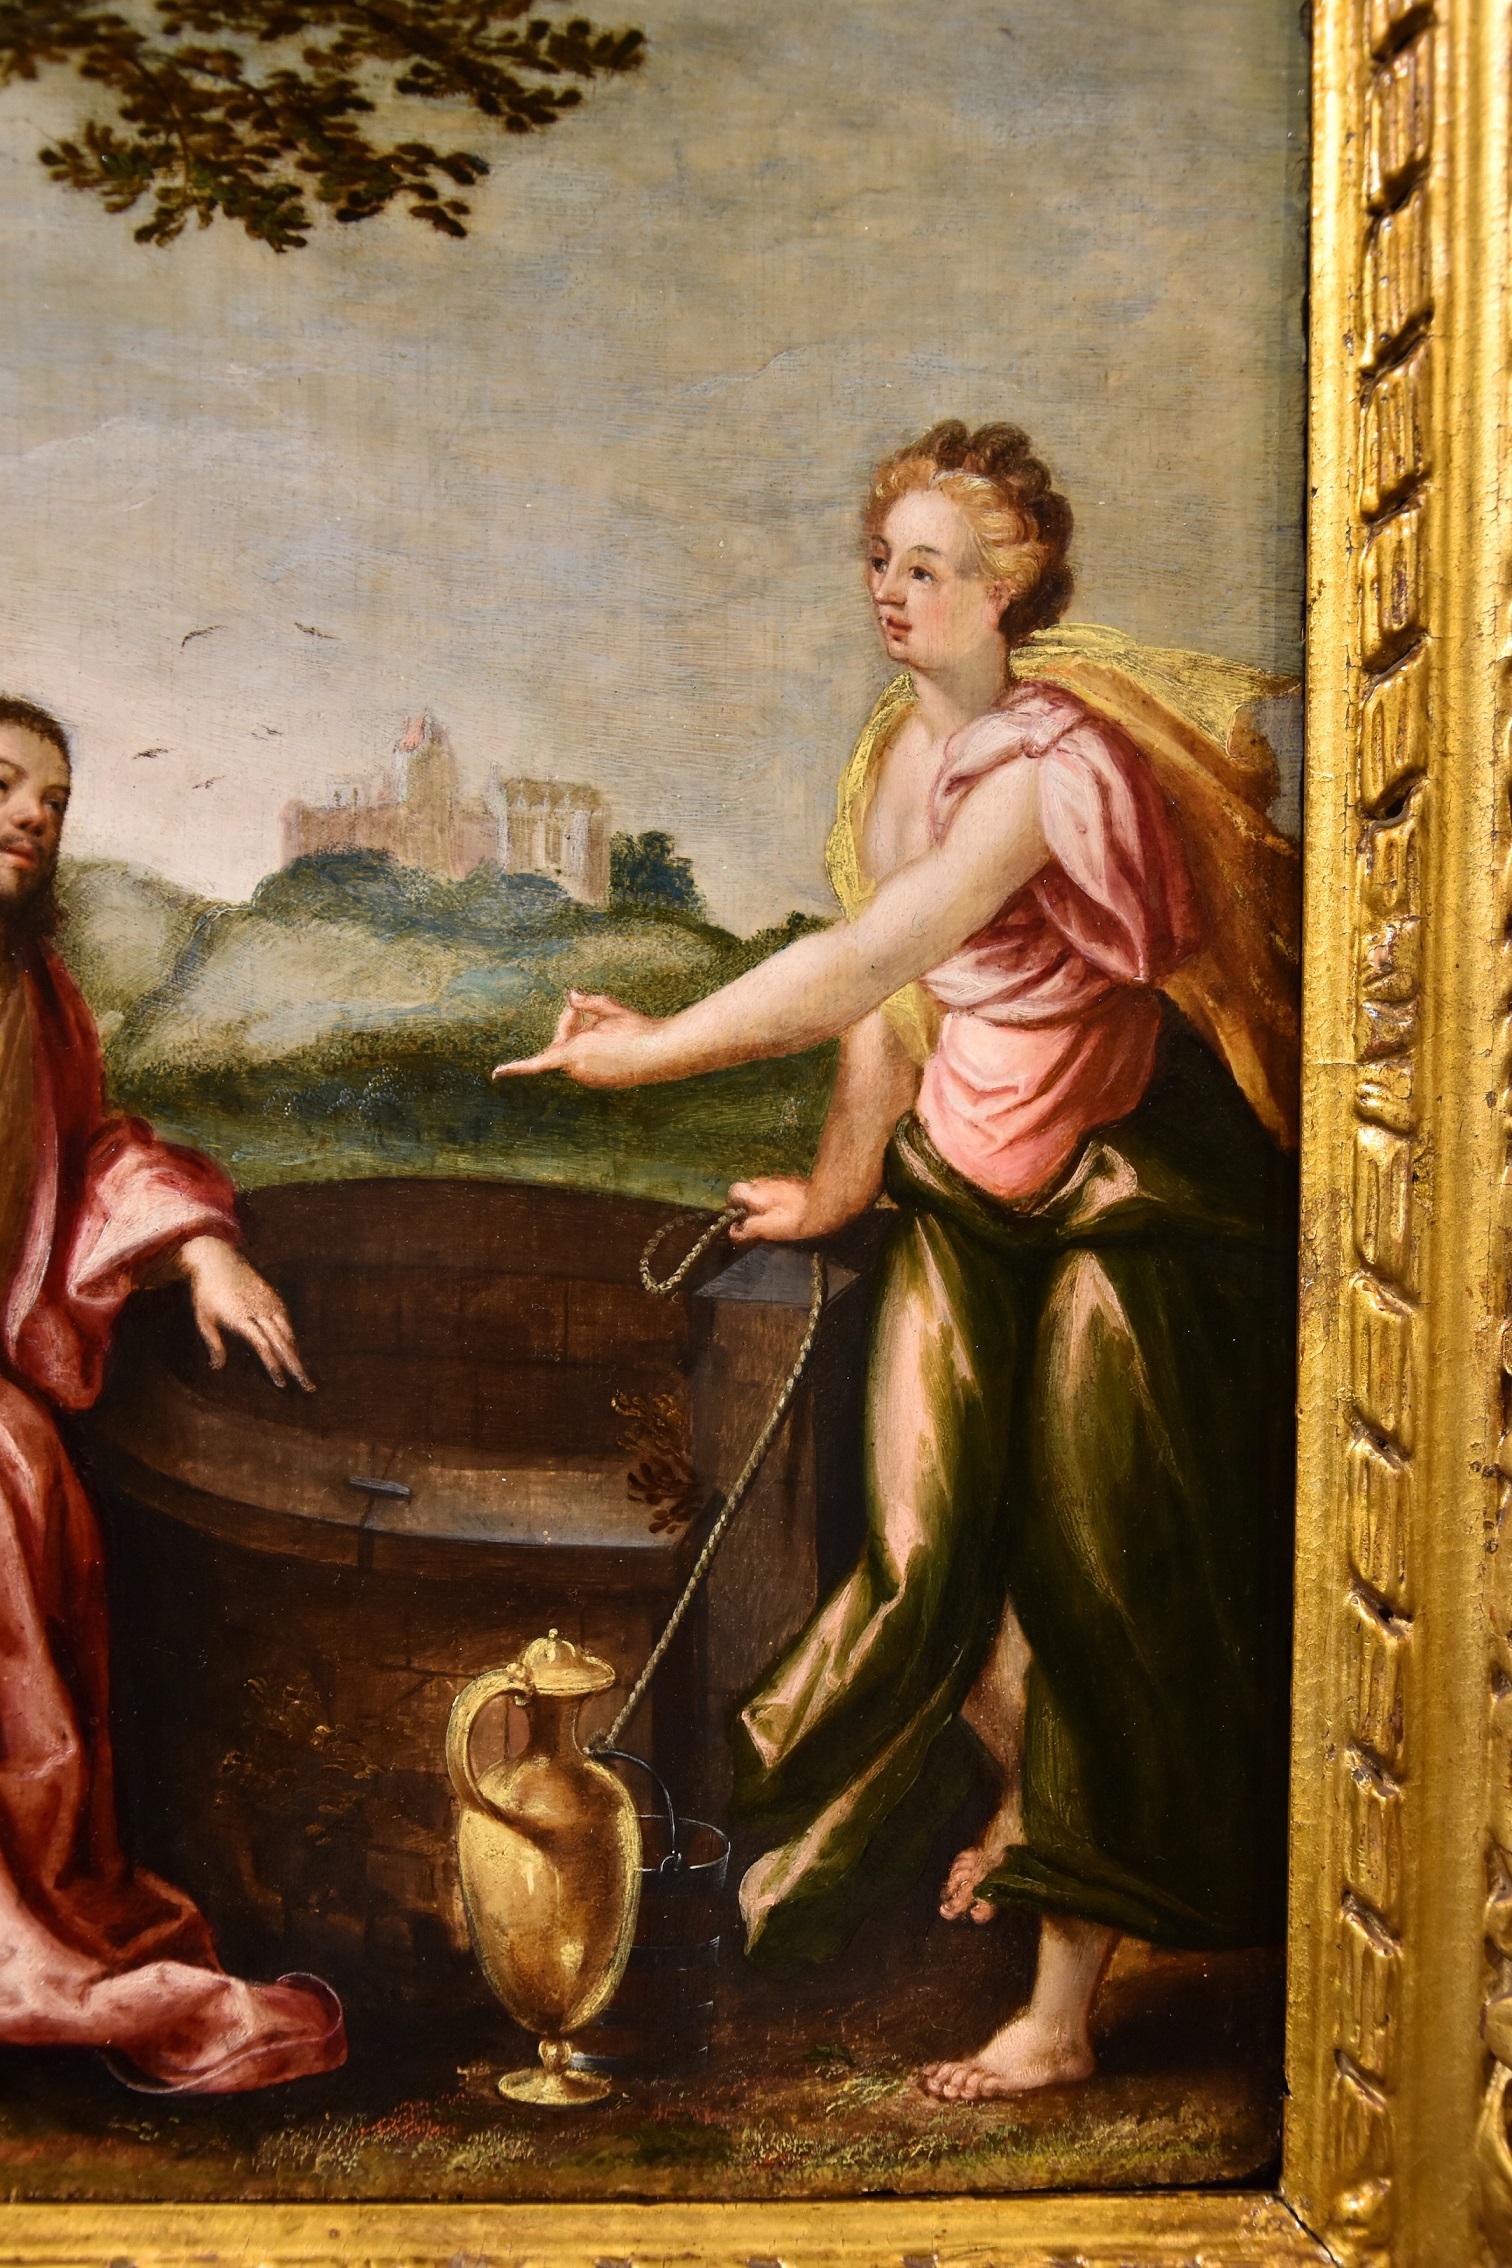 Le Christ et la Samaritaine au puits
Attribuable à Ludovico Pozzoserrato (Anvers vers 1550 - Trévise 1605)

Huile sur la table
37 x 27 cm, dans un cadre 52 x 42 cm.

Le sujet illustré dans cette peinture raffinée est tiré de l'Évangile de Jean (4,